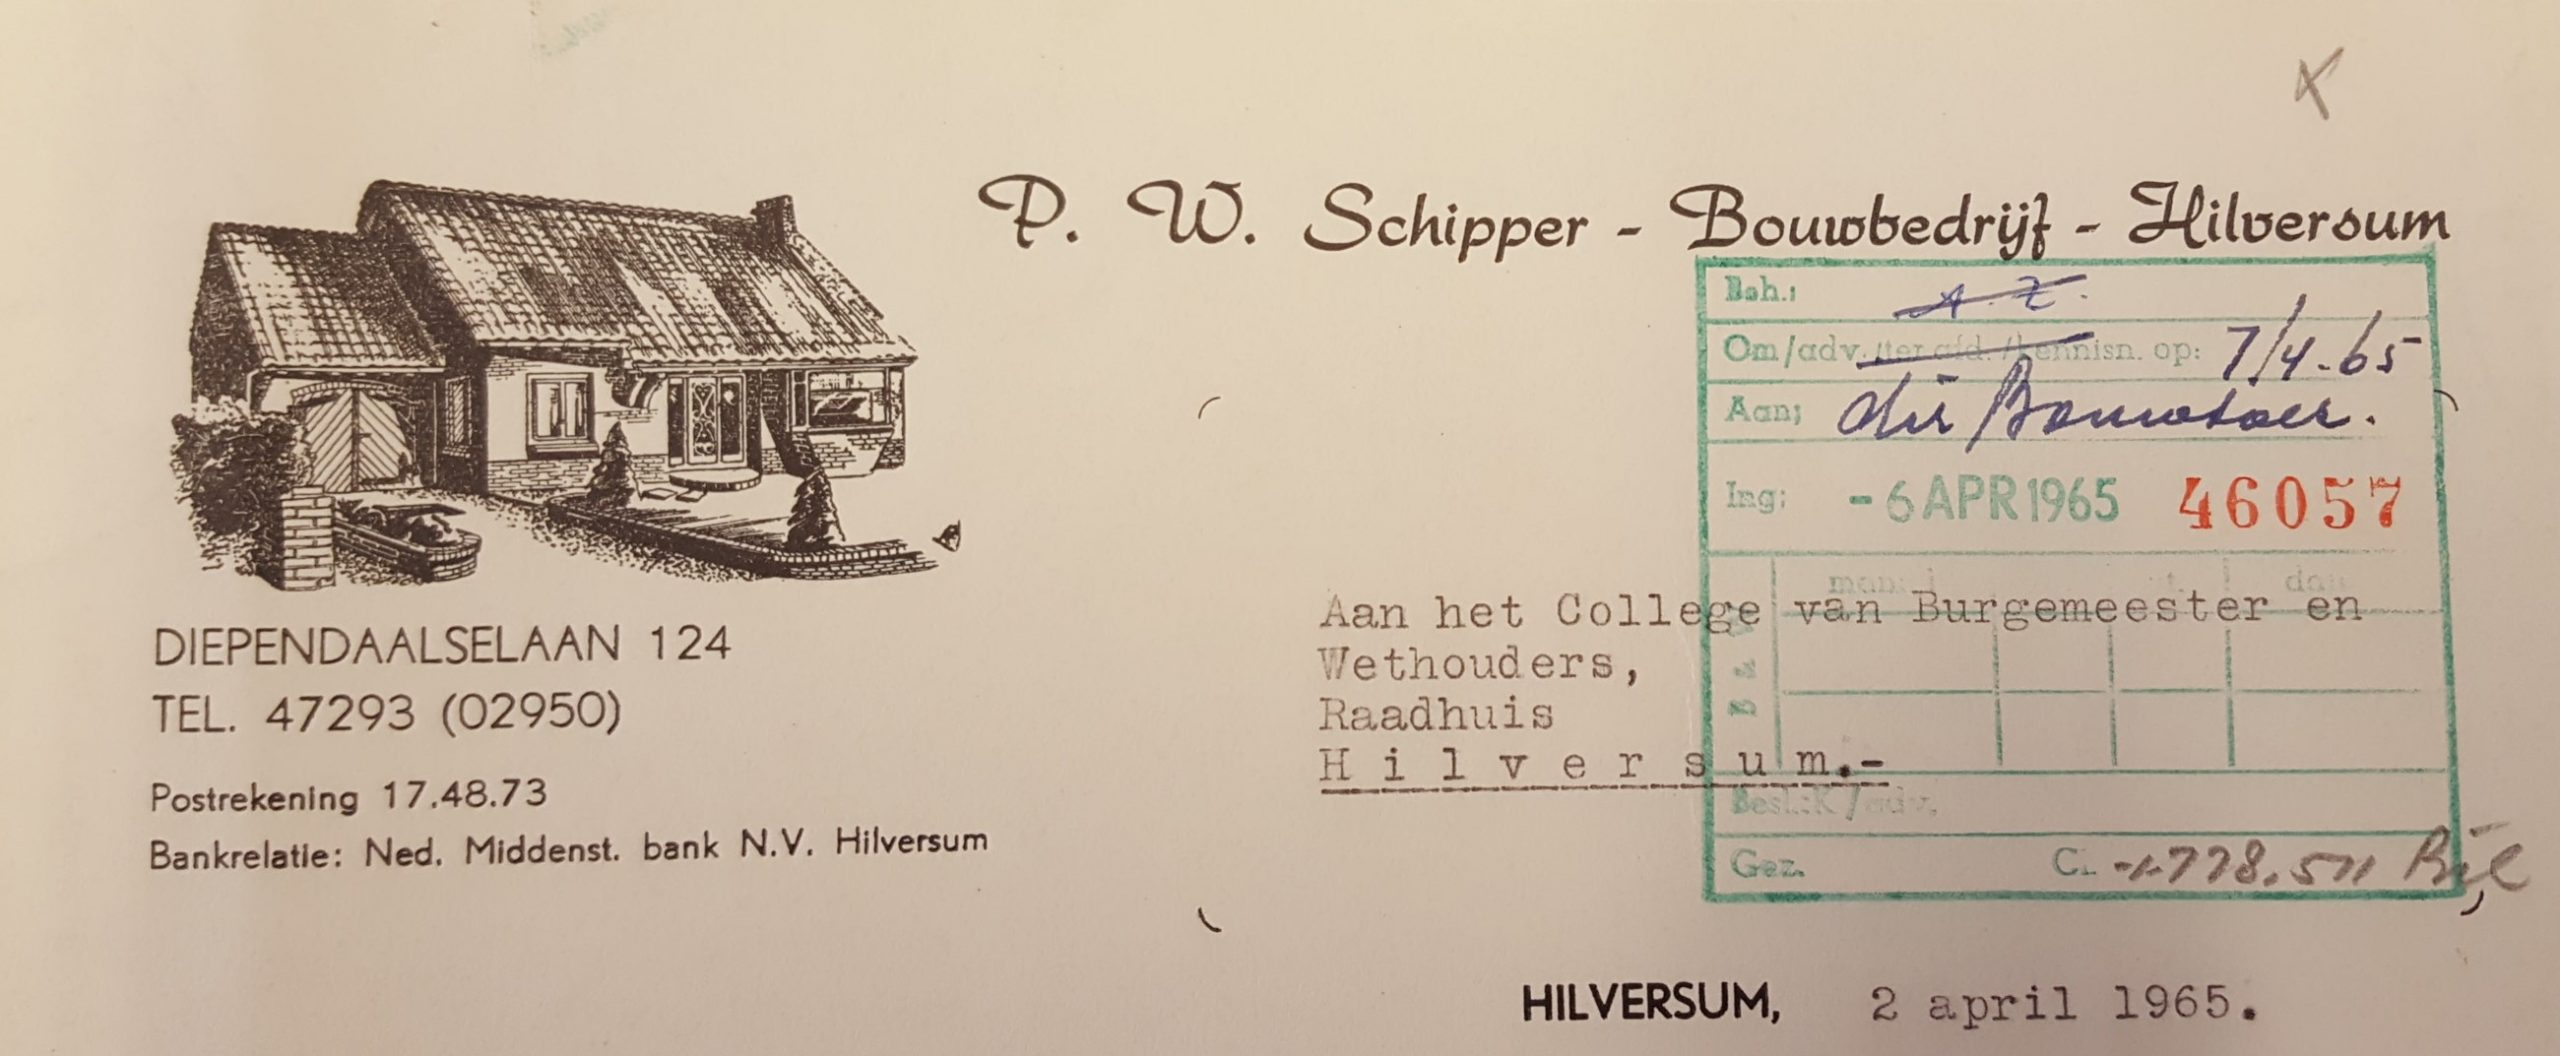 Briefpapier van P.W. Schipper met ontwerp Breebaart. [SAGV]